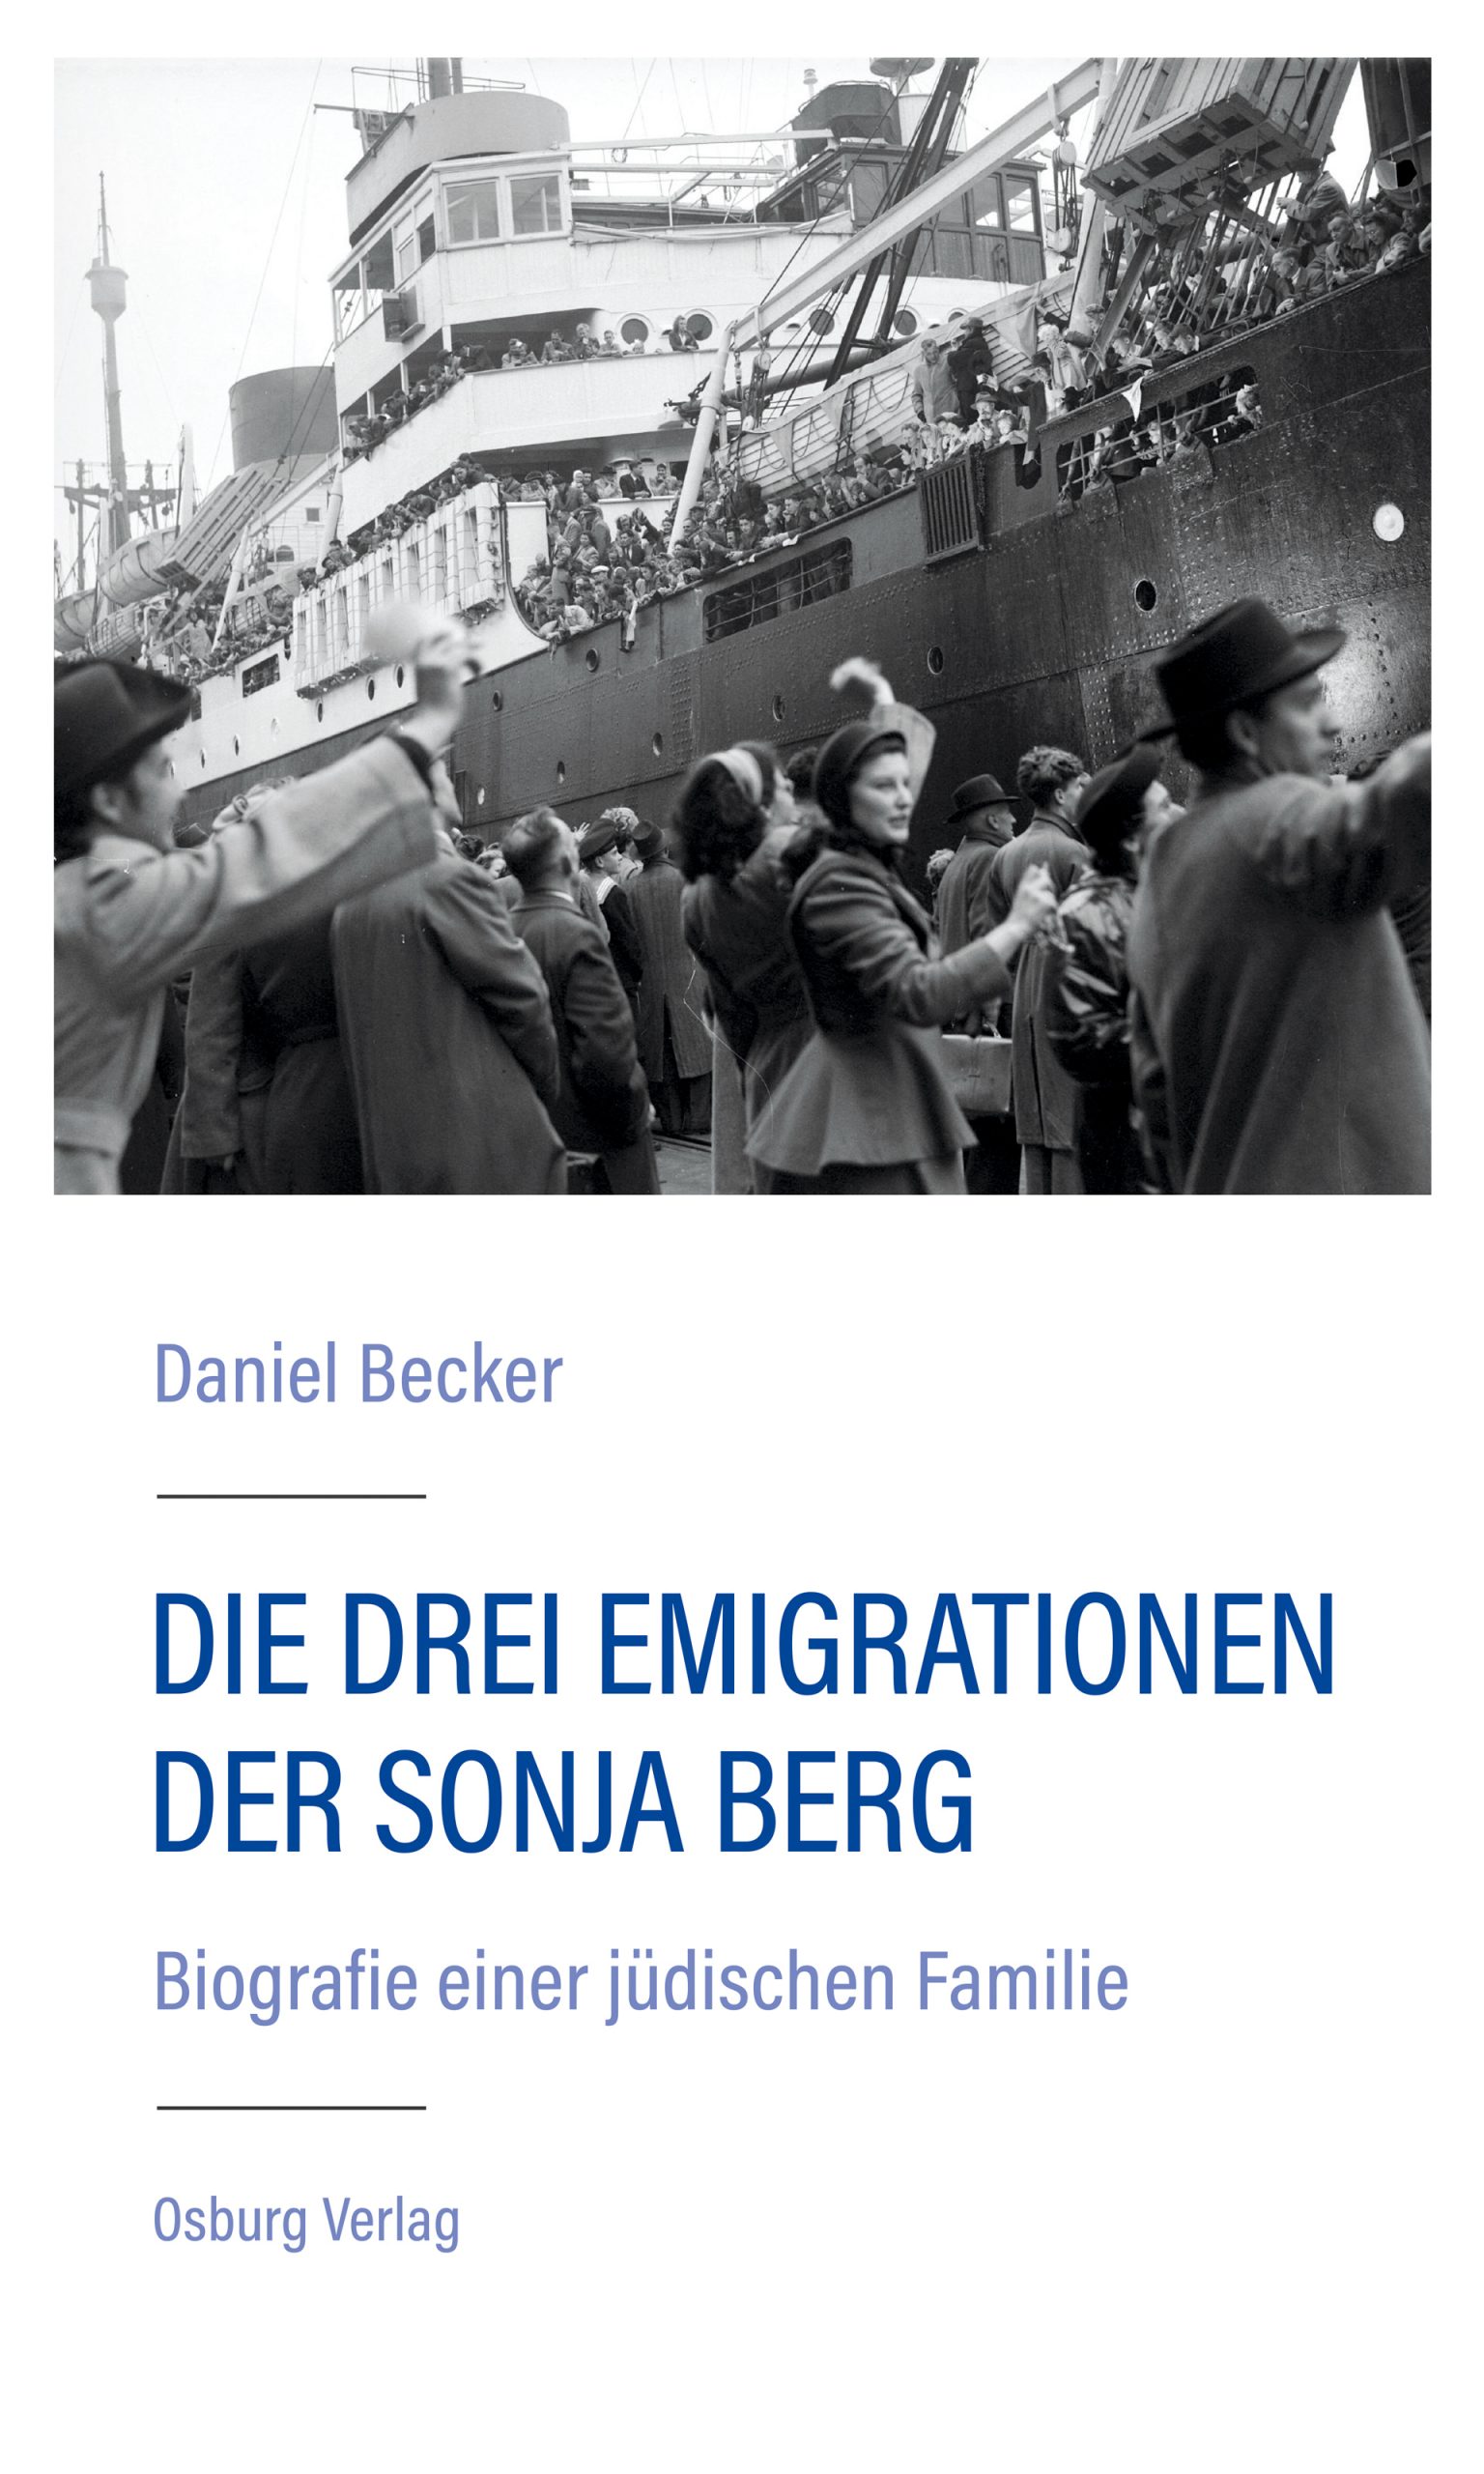 Die drei Emigrationen der Sonja Berg von Daniel Becker Parkbuchhandlung Buchhandlung Bonn Bad Godesberg